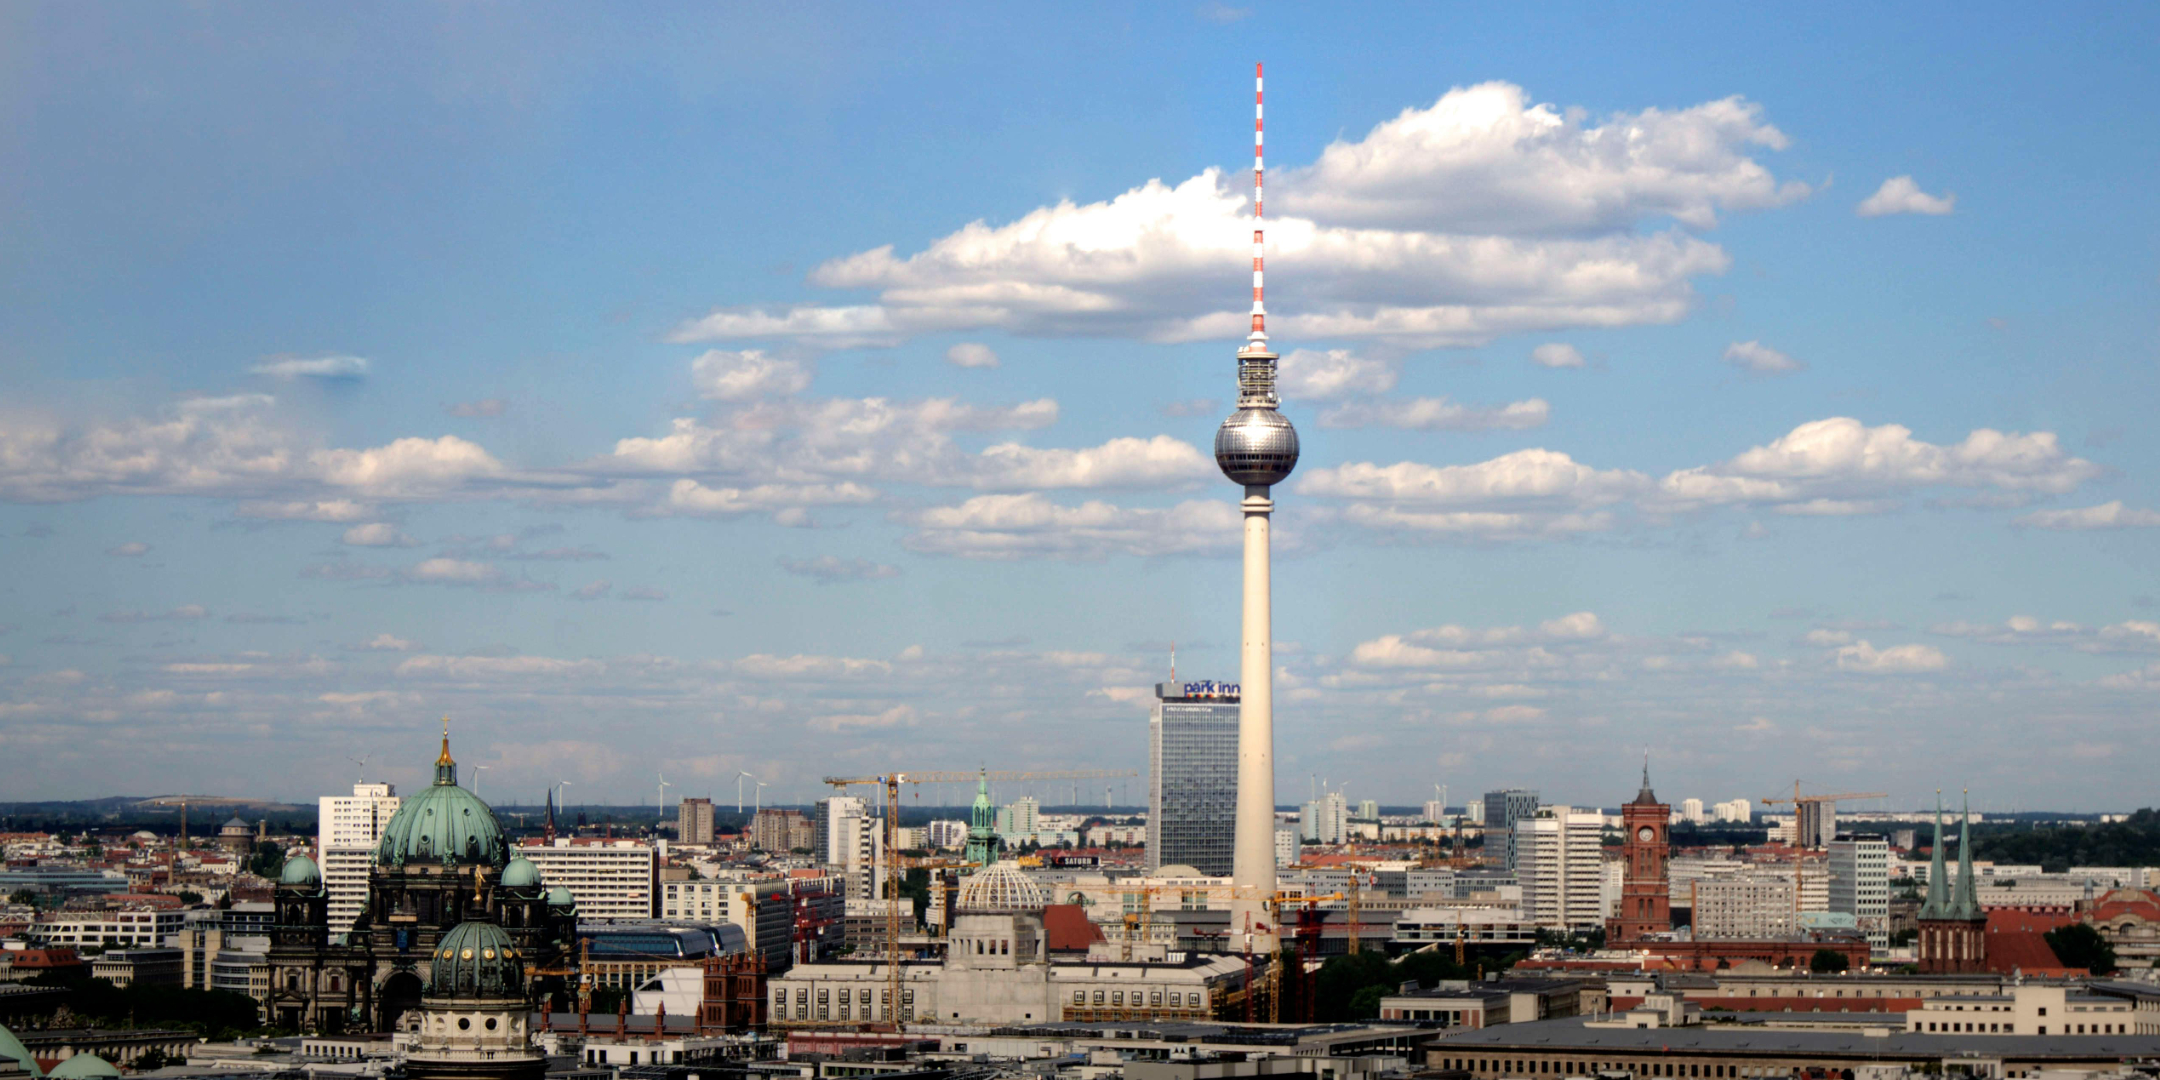 Wir fahren nach Berlin! – Fortbildungsreise zum ARD-Hauptstadtstudio und zur Redaktion von t-online